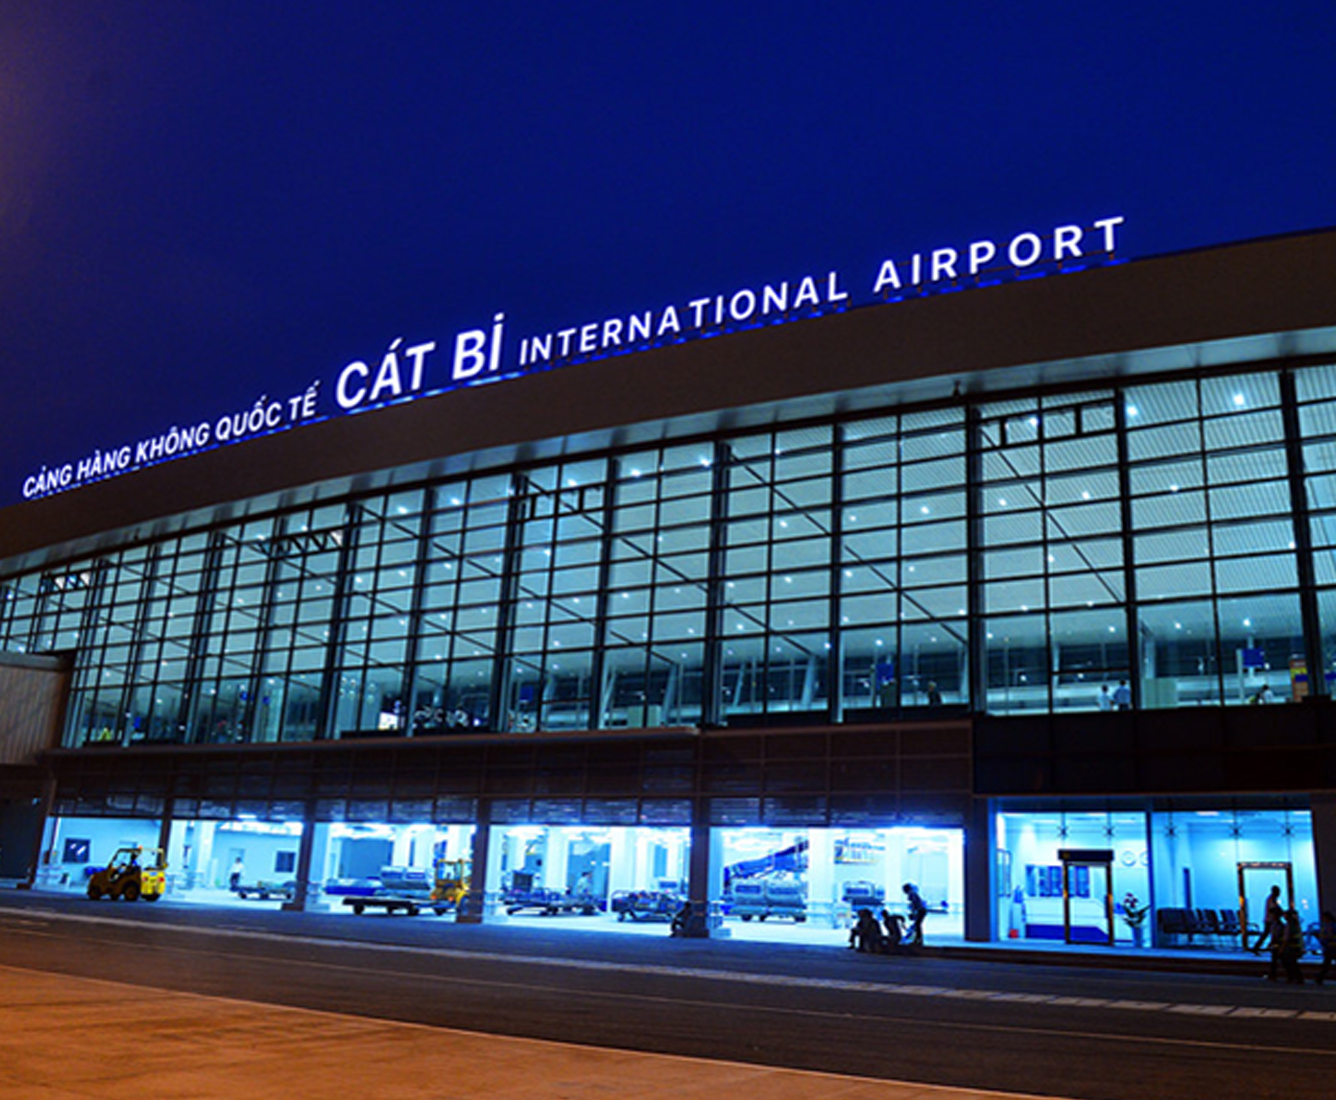 Sân bay Cát Bi là một trong các sân bay lớn tại Việt Nam